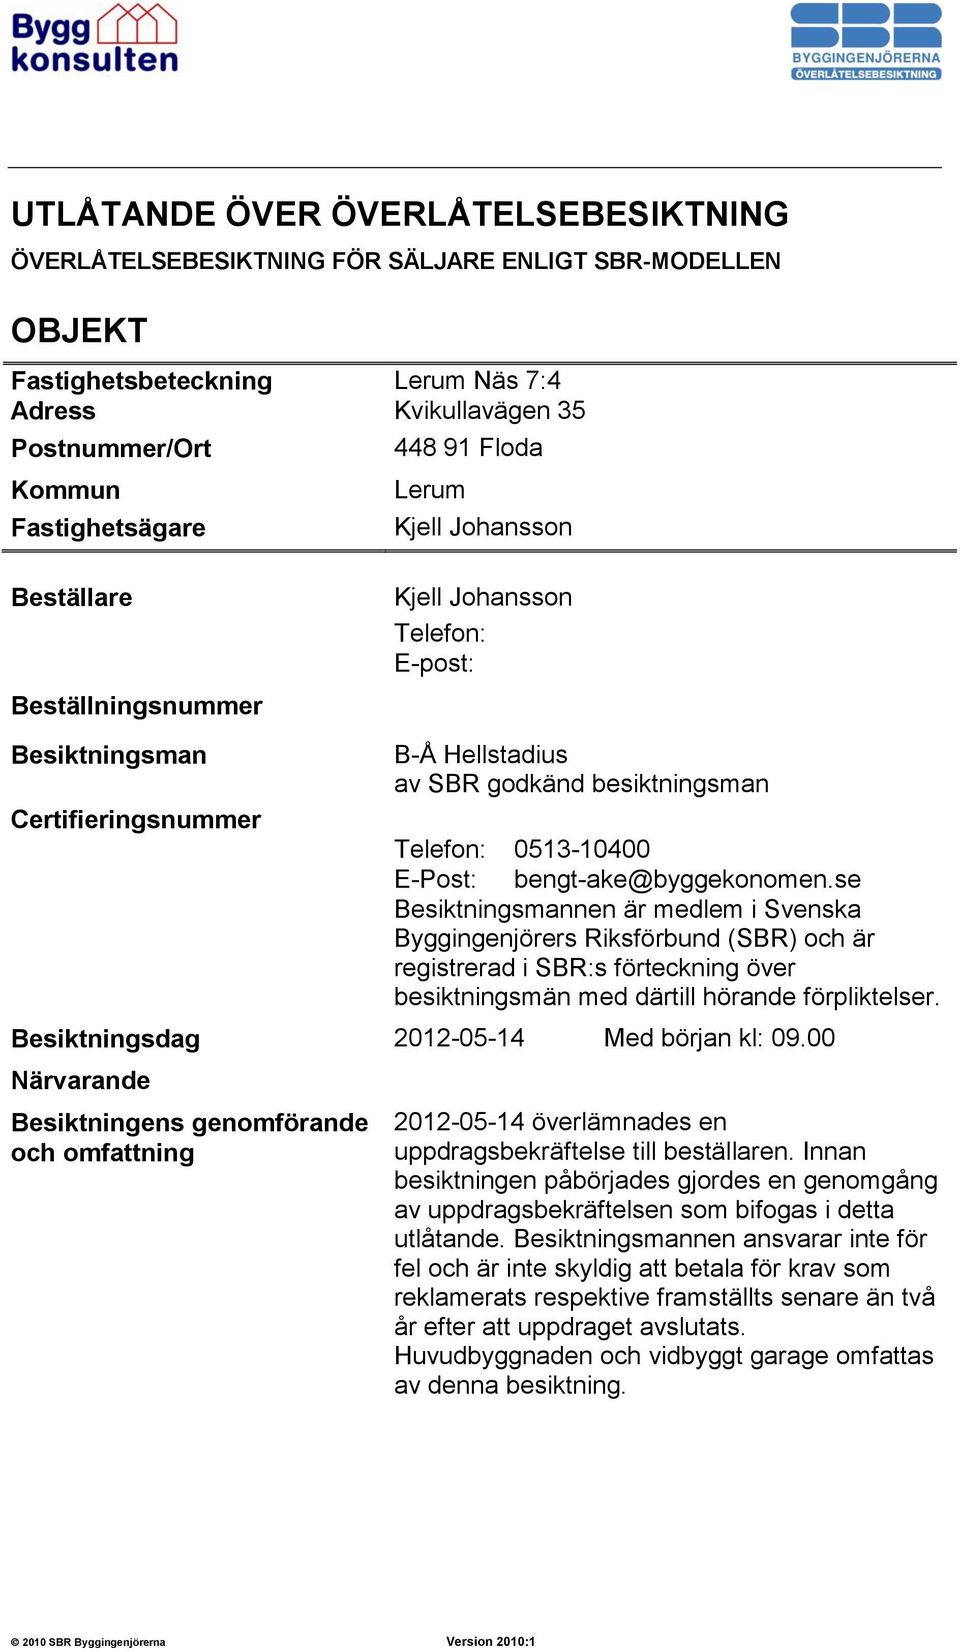 E-Post: bengt-ake@byggekonomen.se Besiktningsmannen är medlem i Svenska Byggingenjörers Riksförbund (SBR) och är registrerad i SBR:s förteckning över besiktningsmän med därtill hörande förpliktelser.